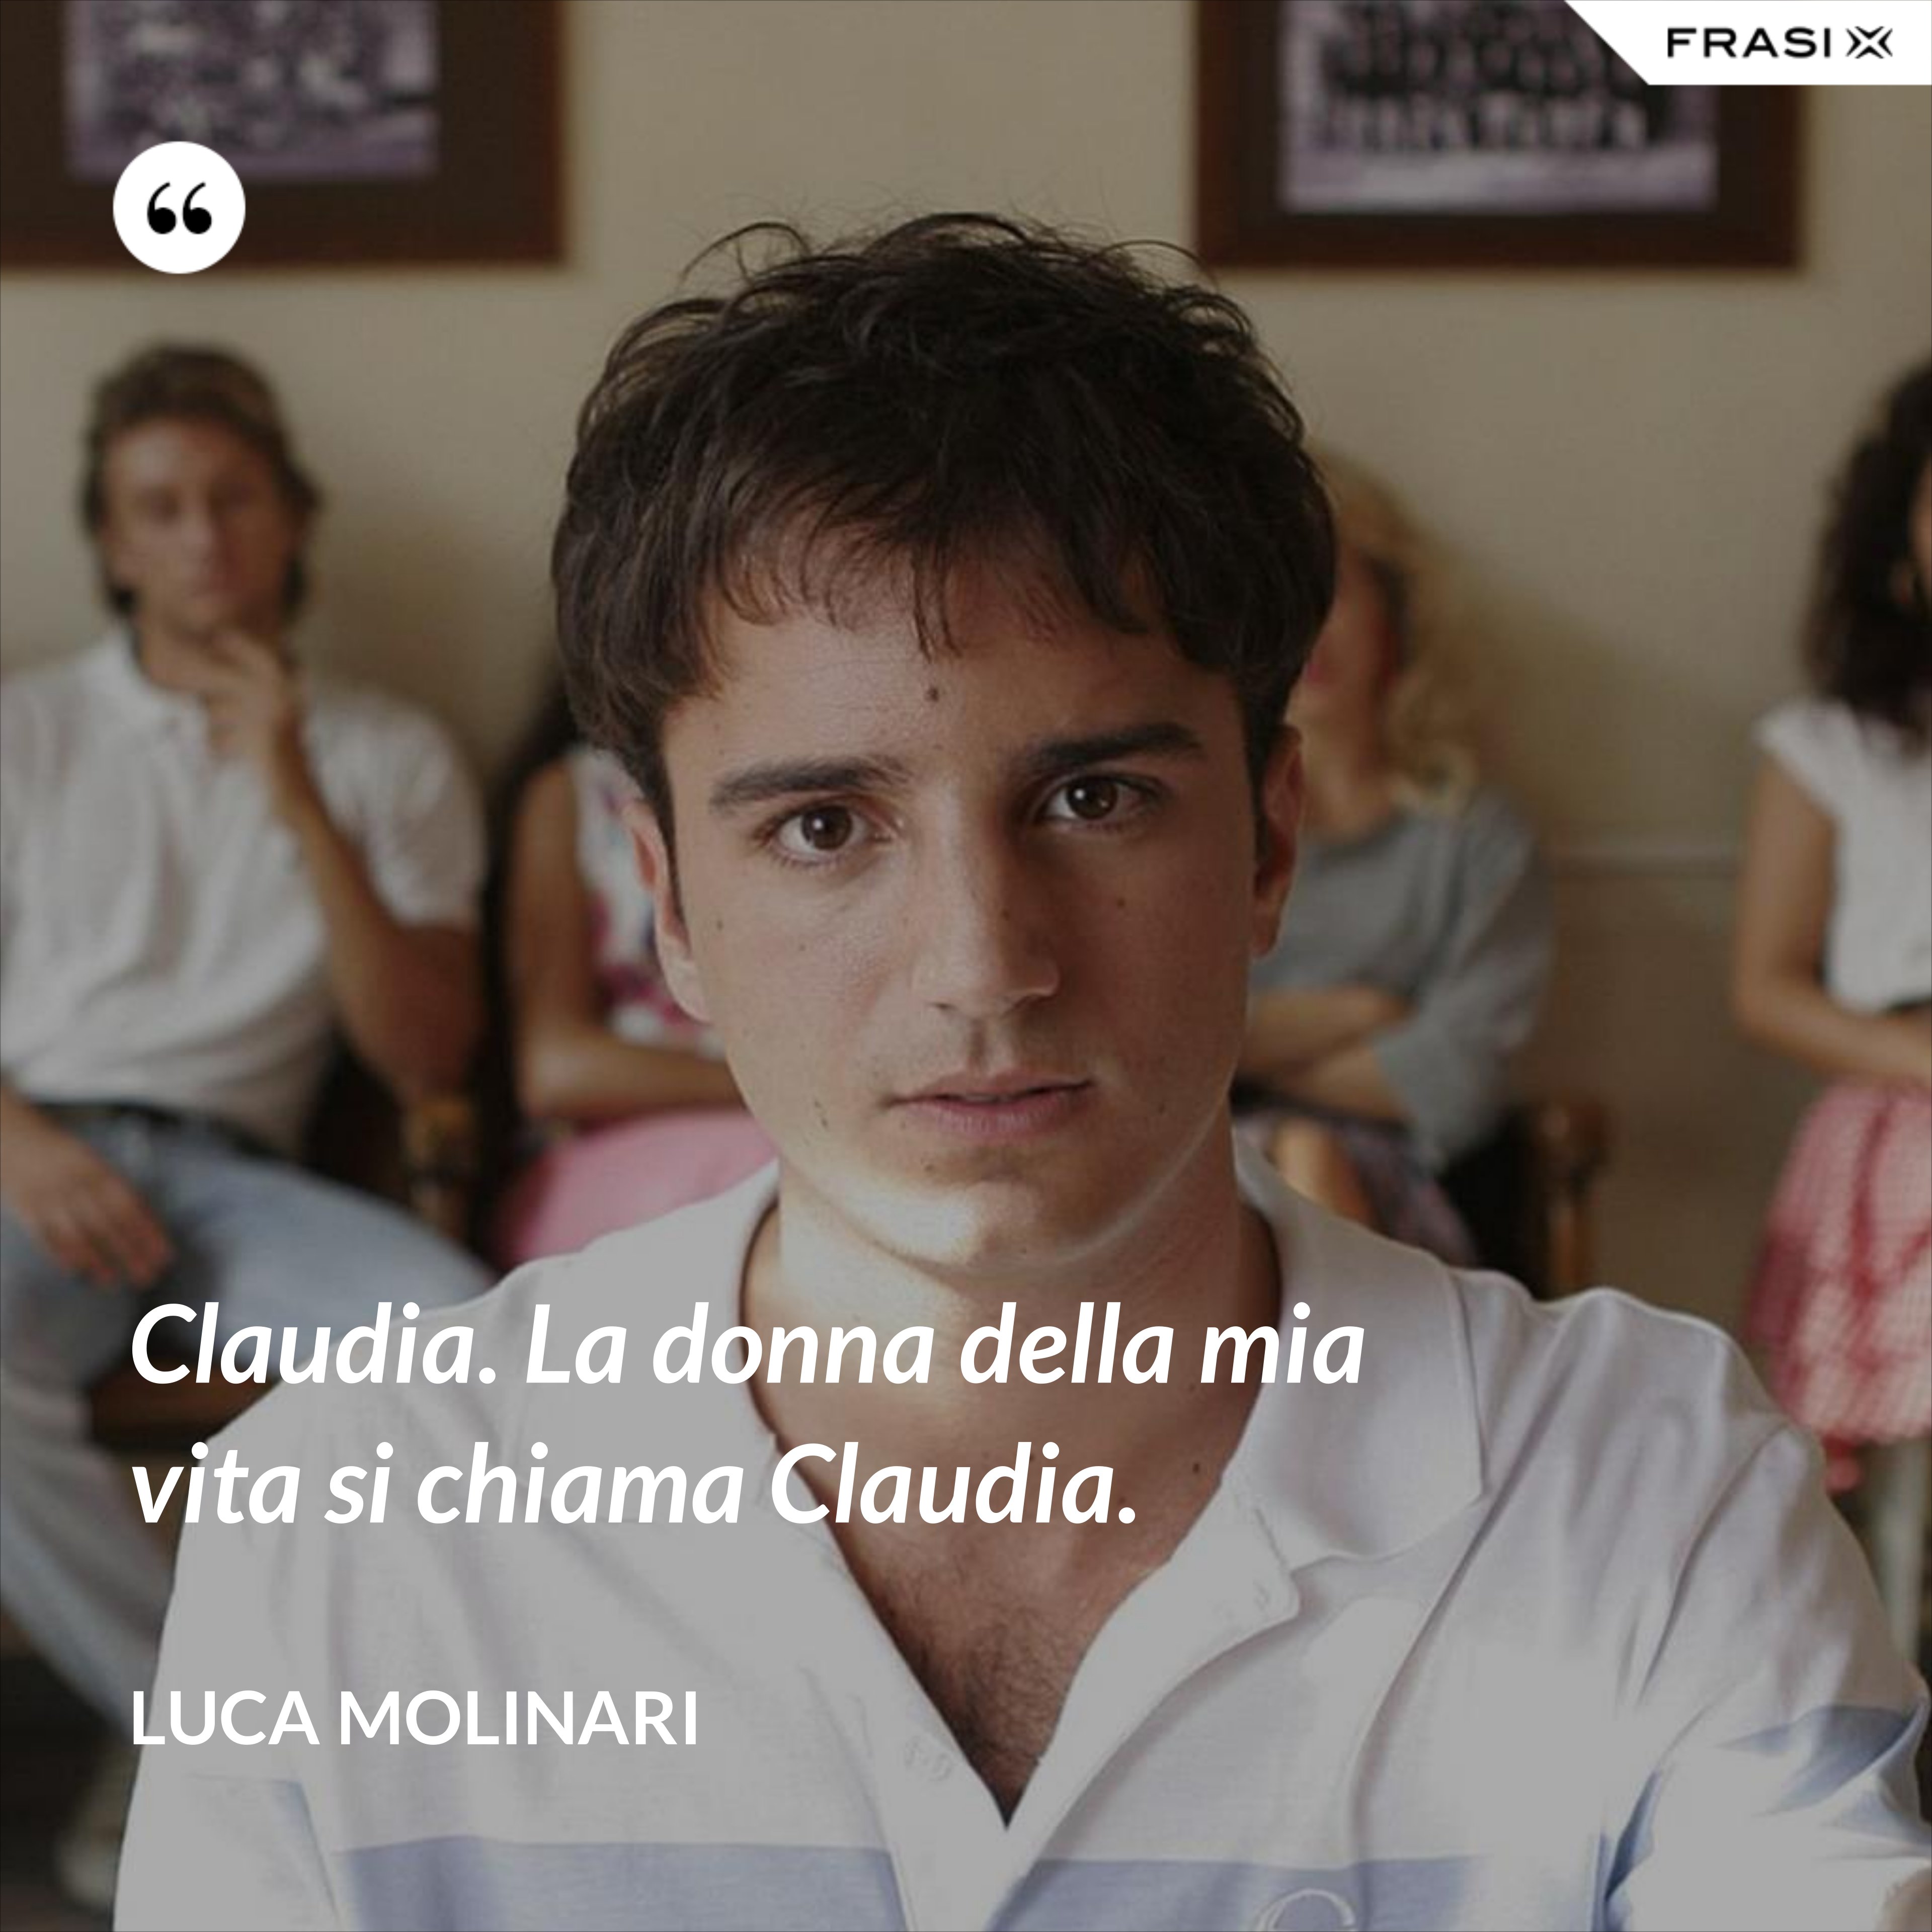 Claudia. La donna della mia vita si chiama Claudia. - Luca Molinari